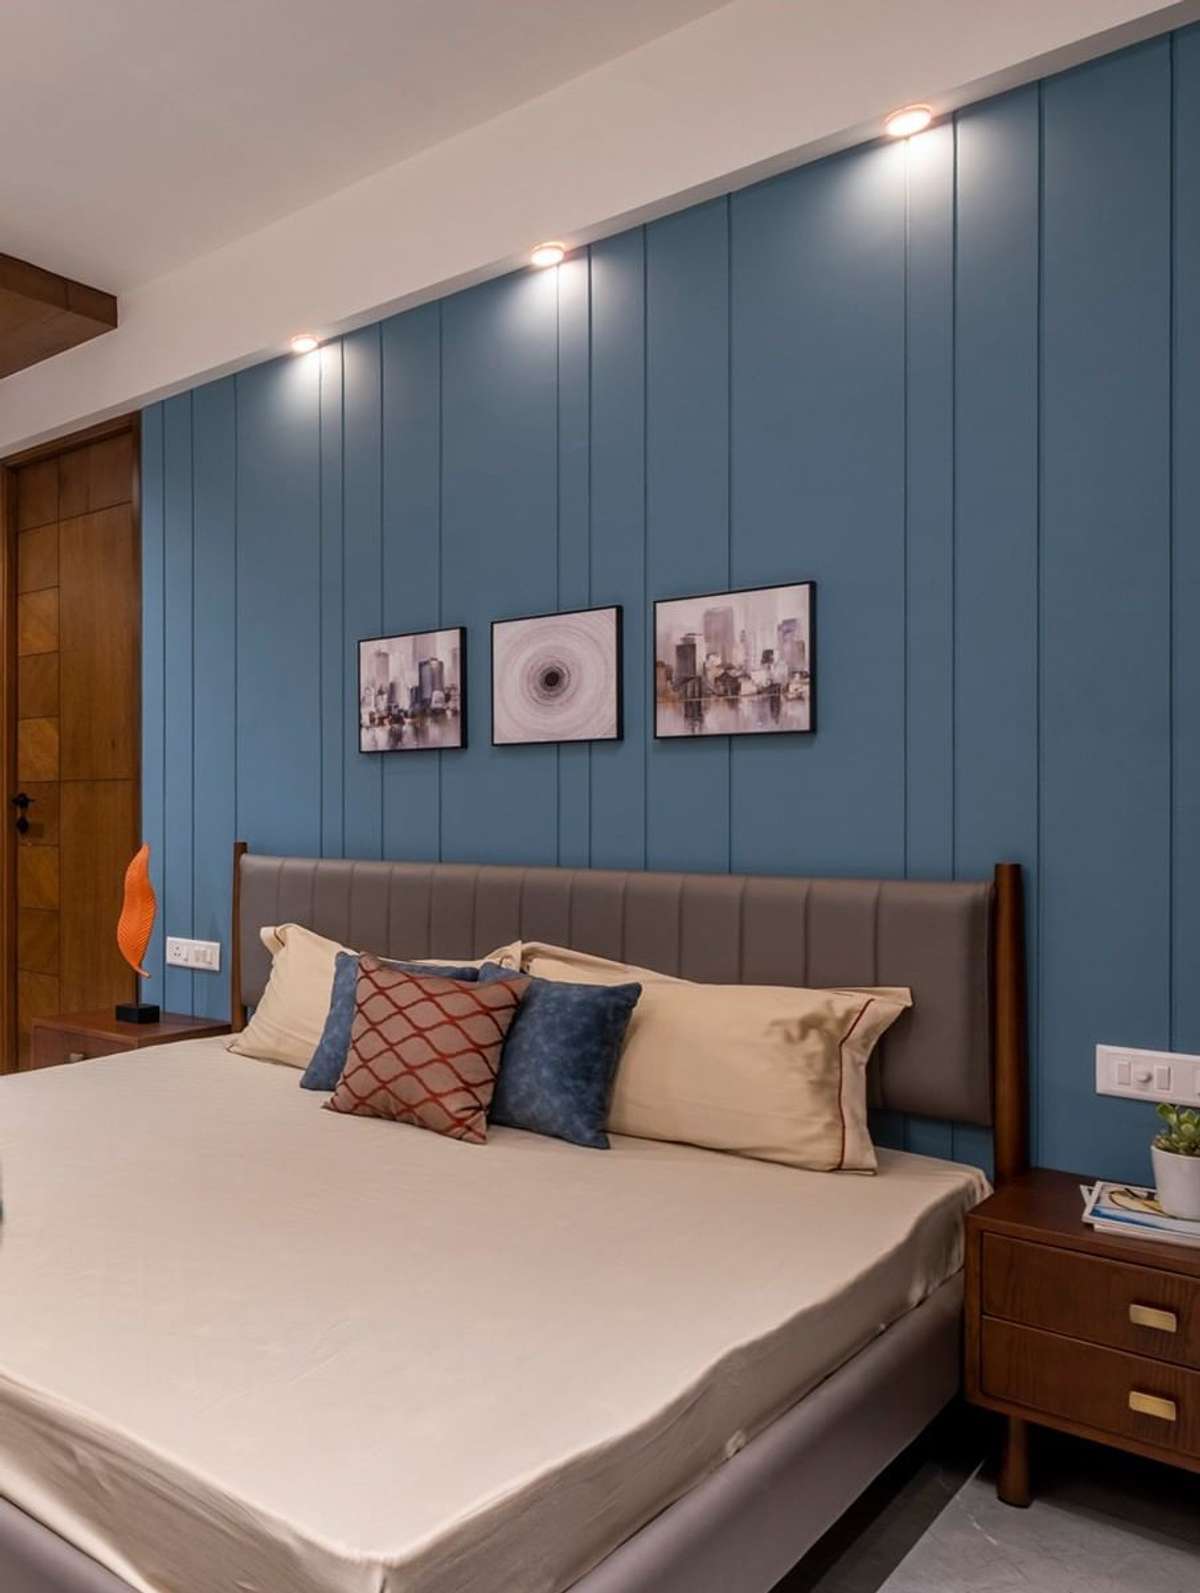 bedroom design  #BedroomDecor #MasterBedroom #KingsizeBedroom #BedroomDesigns